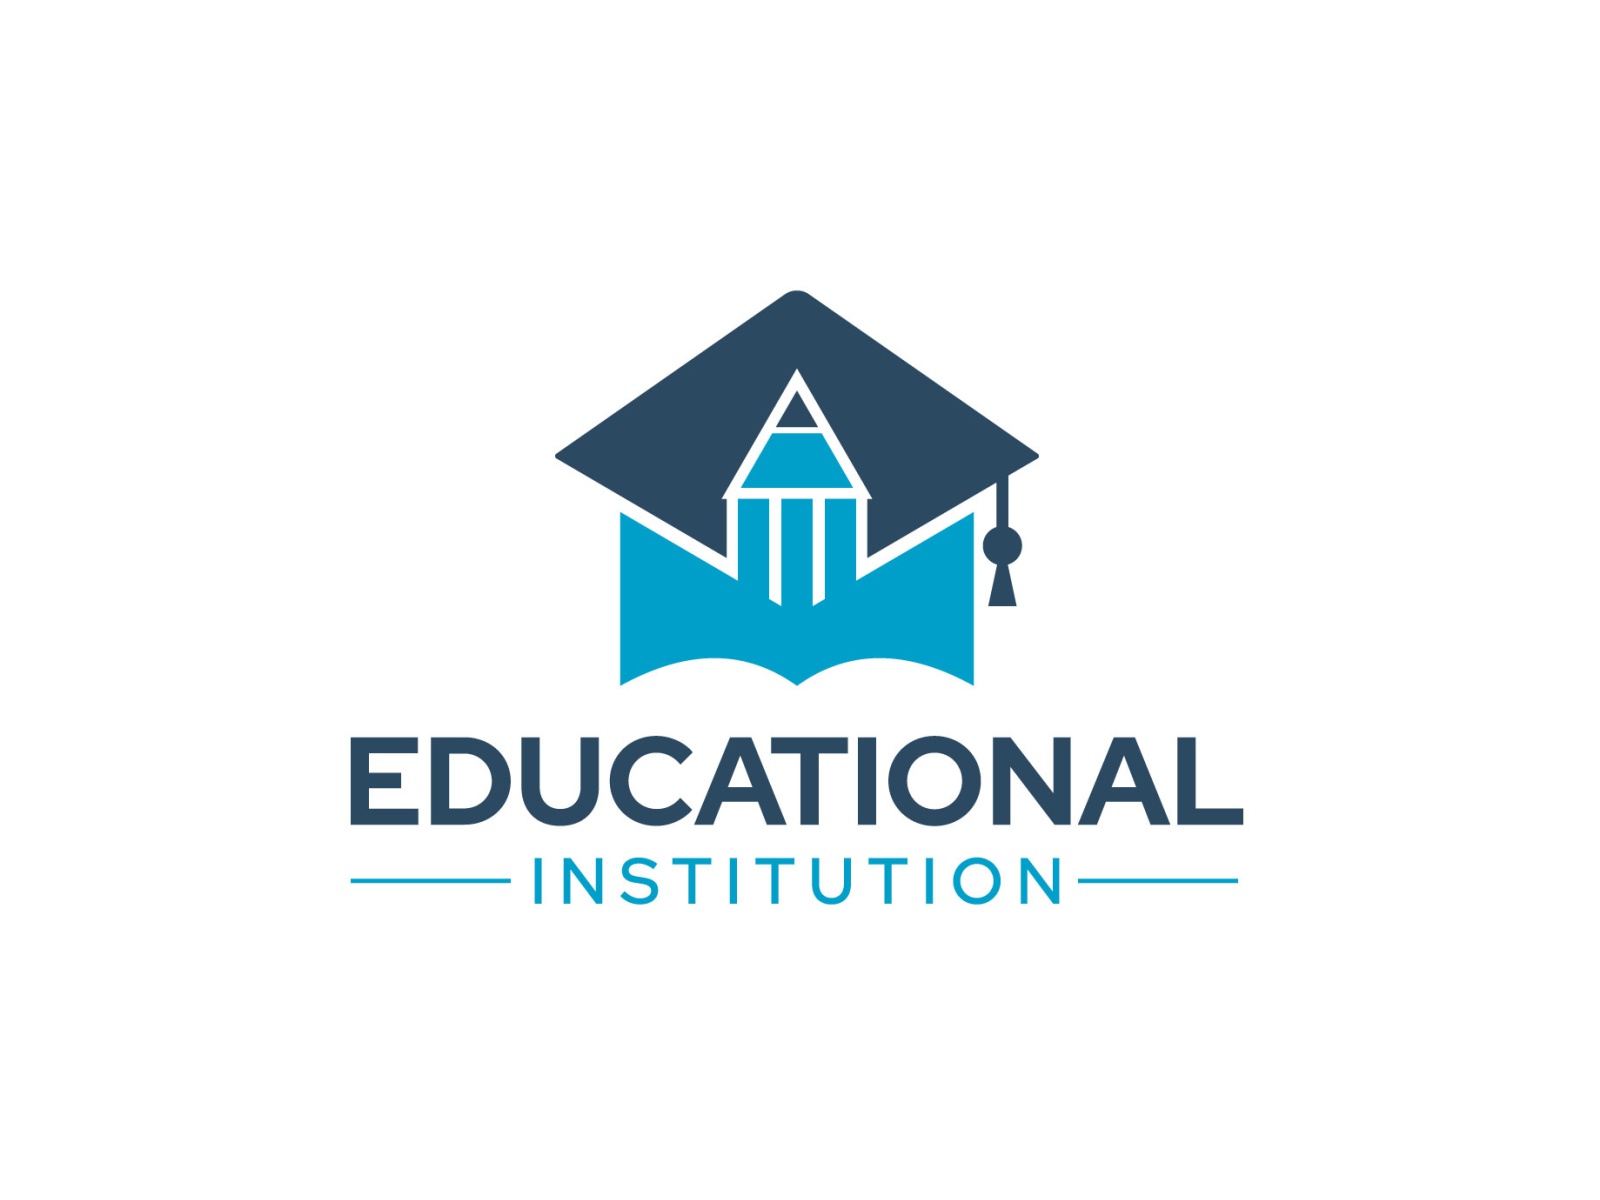 Educational institution